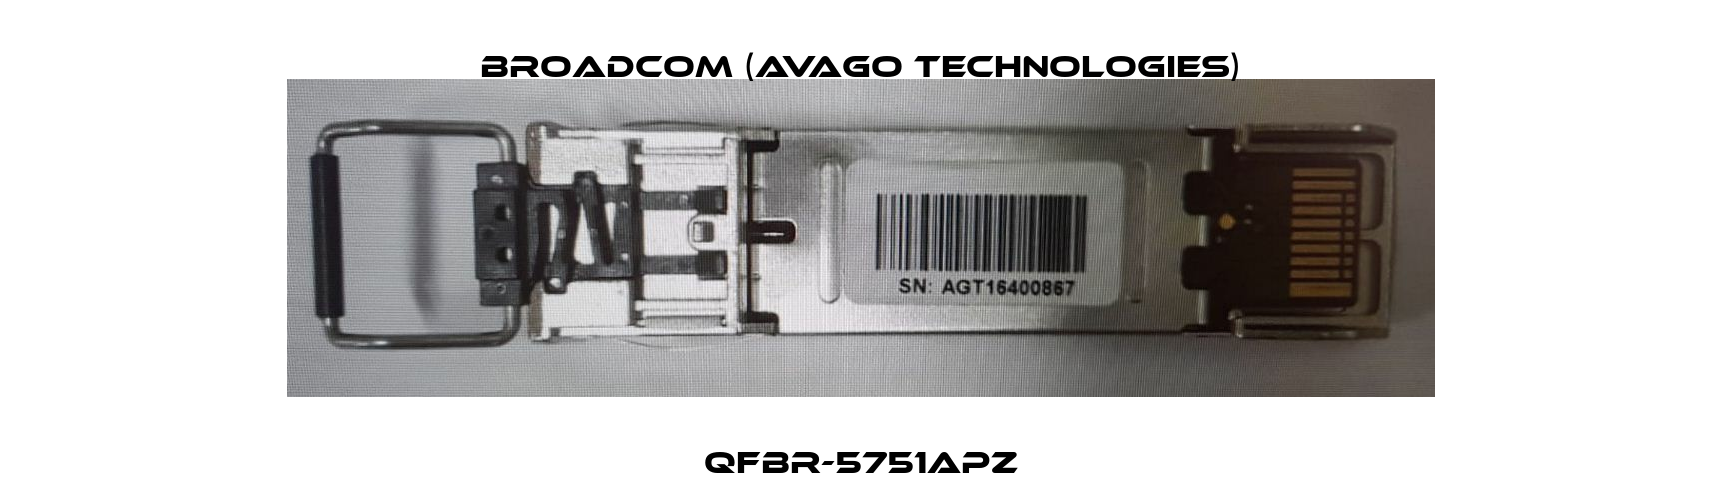 QFBR-5751APZ Broadcom (Avago Technologies)